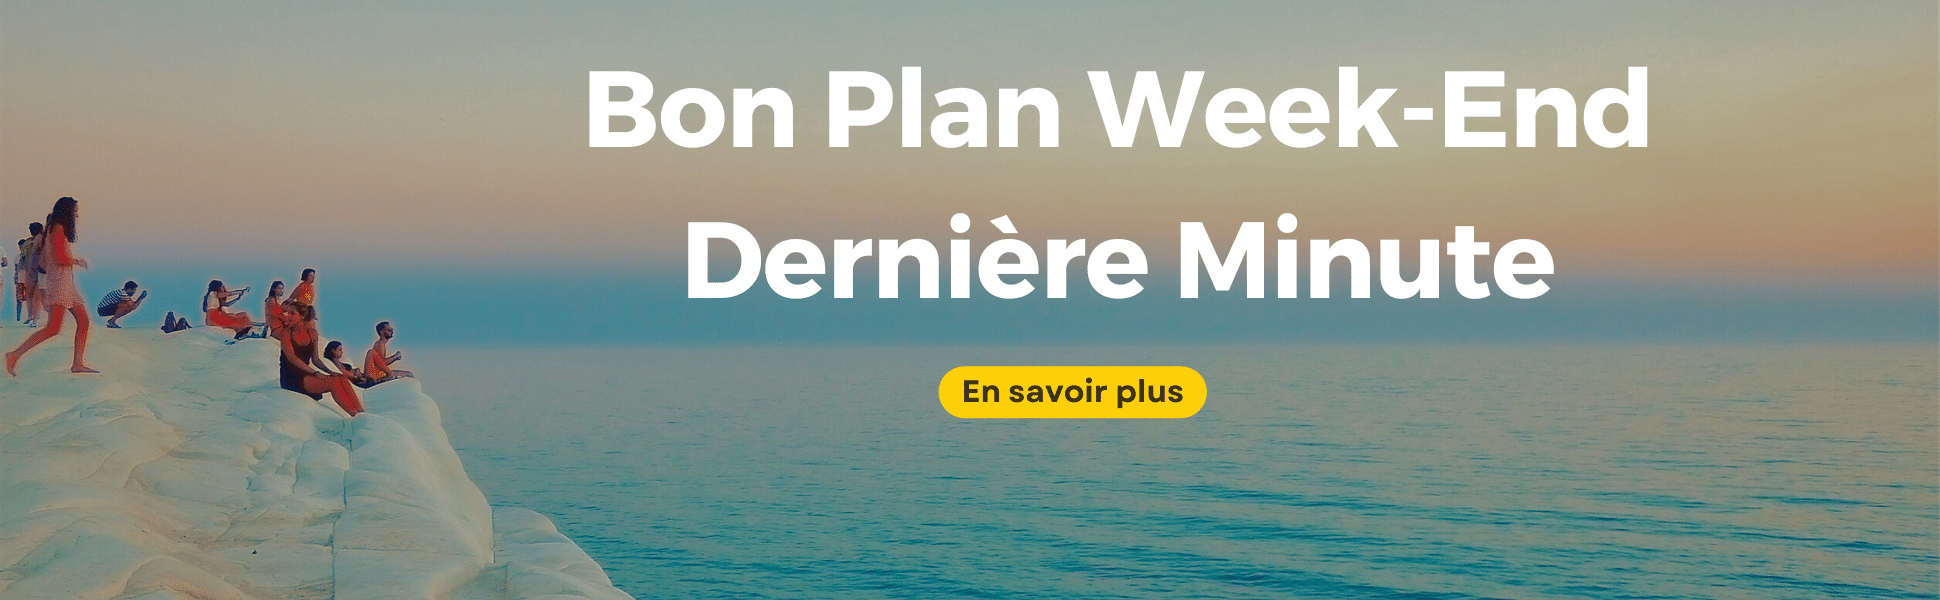 Bon-Plan-Week-End-Derniere